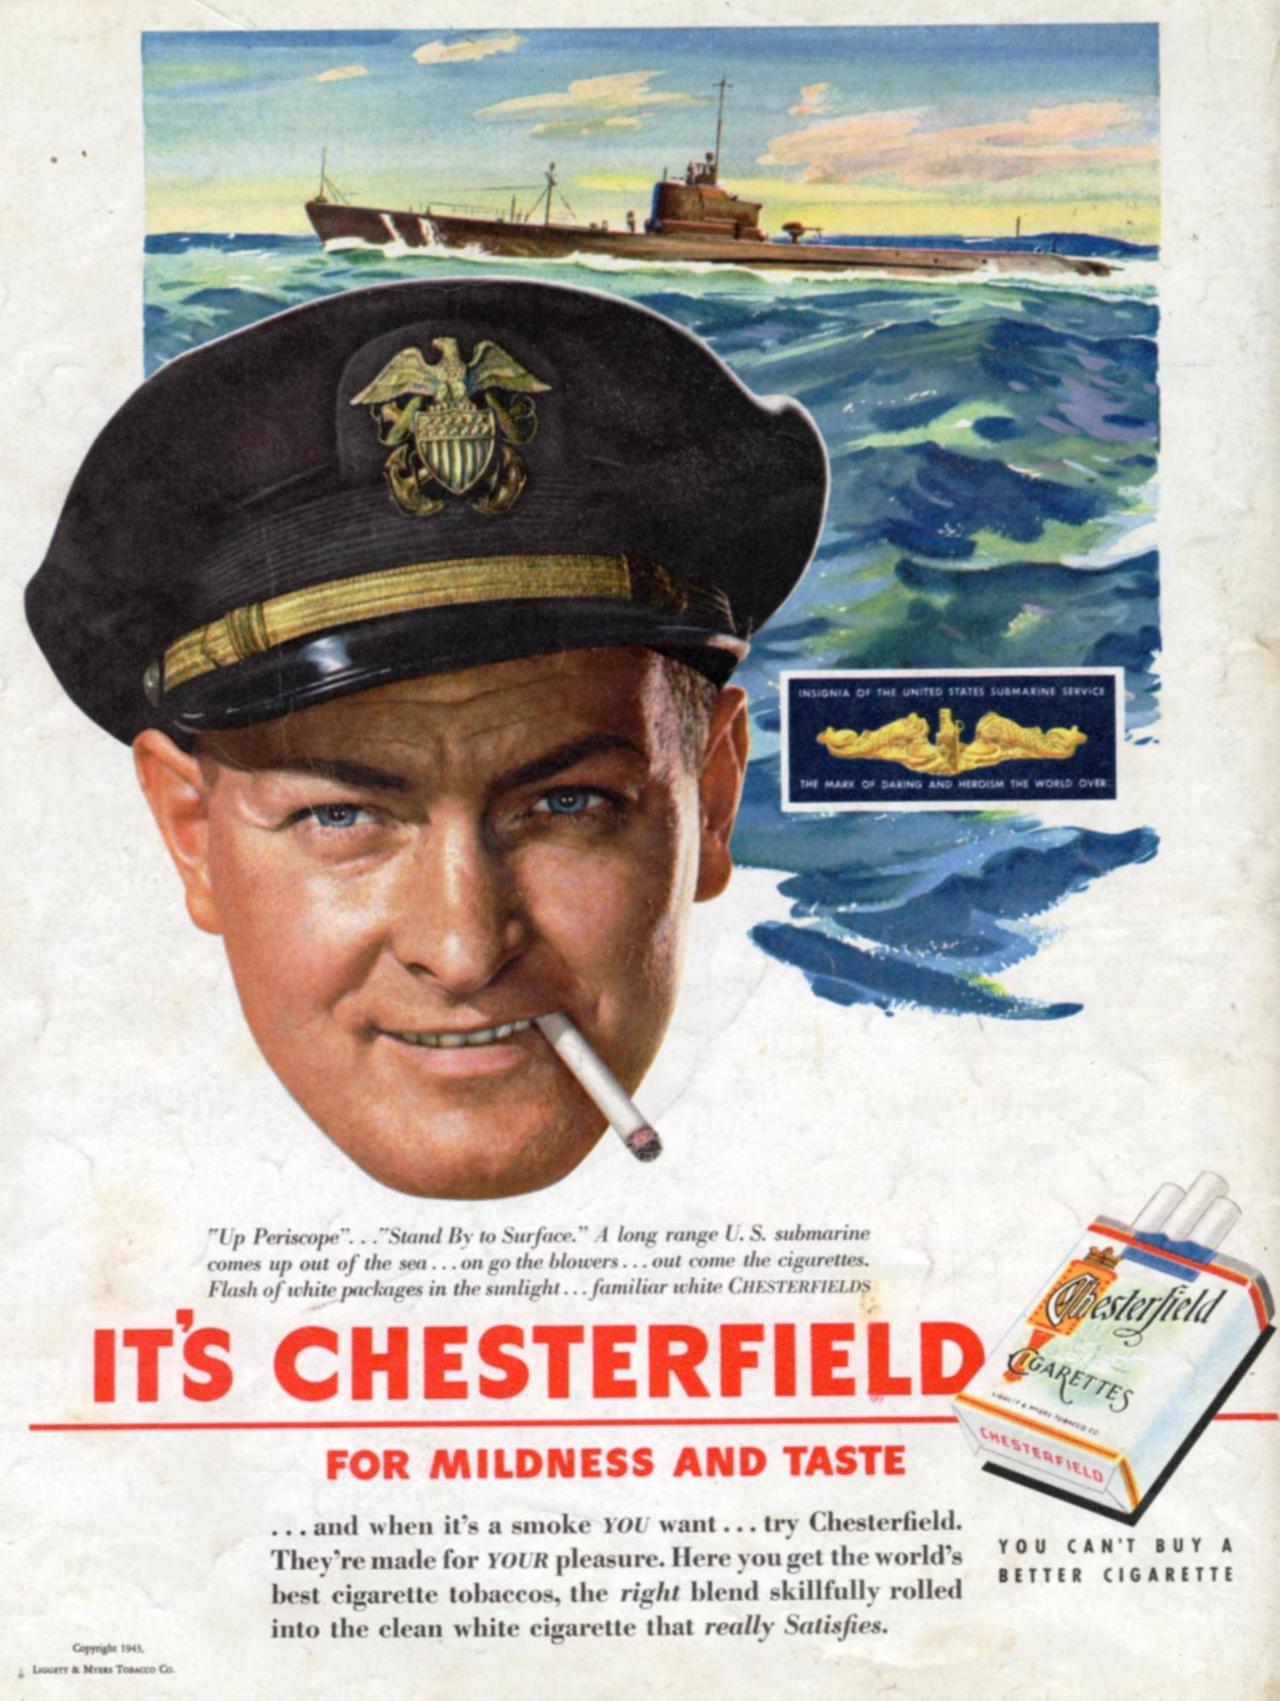 Die Zigarettenwerbung zeigt den Kopf eines rauchenden Seemanns, im Hintergrund gemalt das Meer mit einem U-Boot, darunter die Aufschrift "It's Chesterfield"